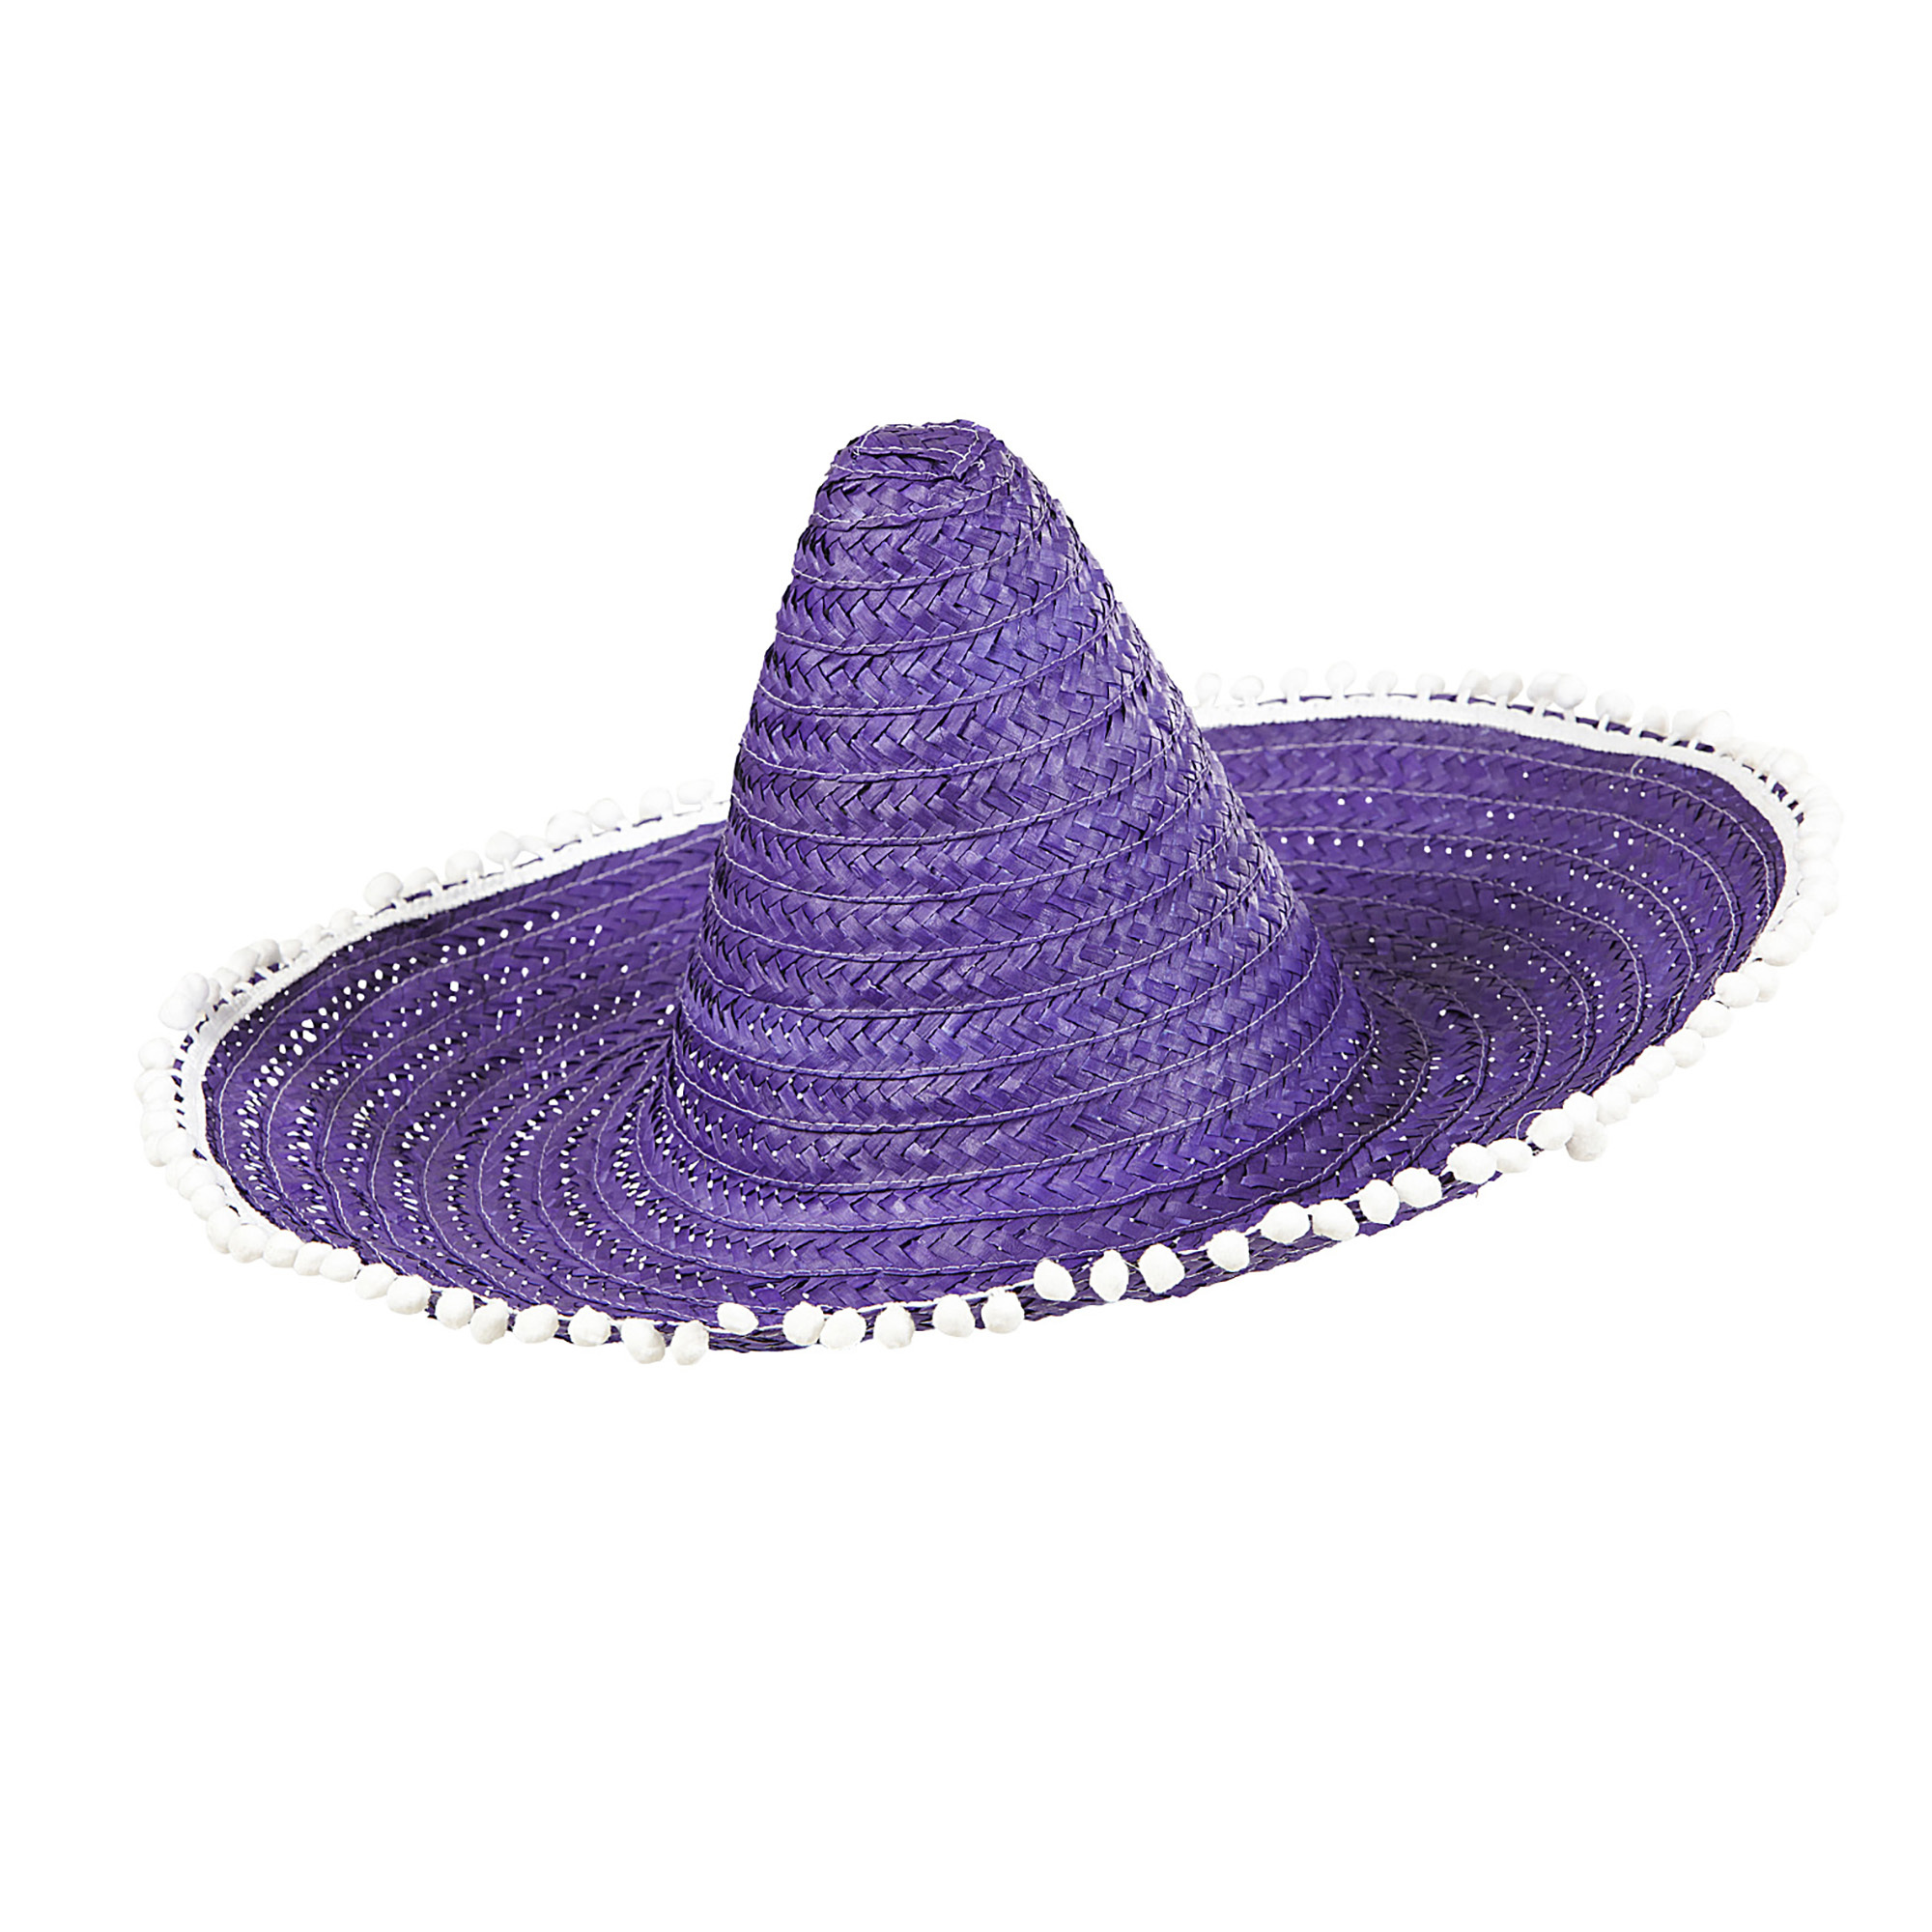 Sombrero blauw met paars 50cm met pom poms